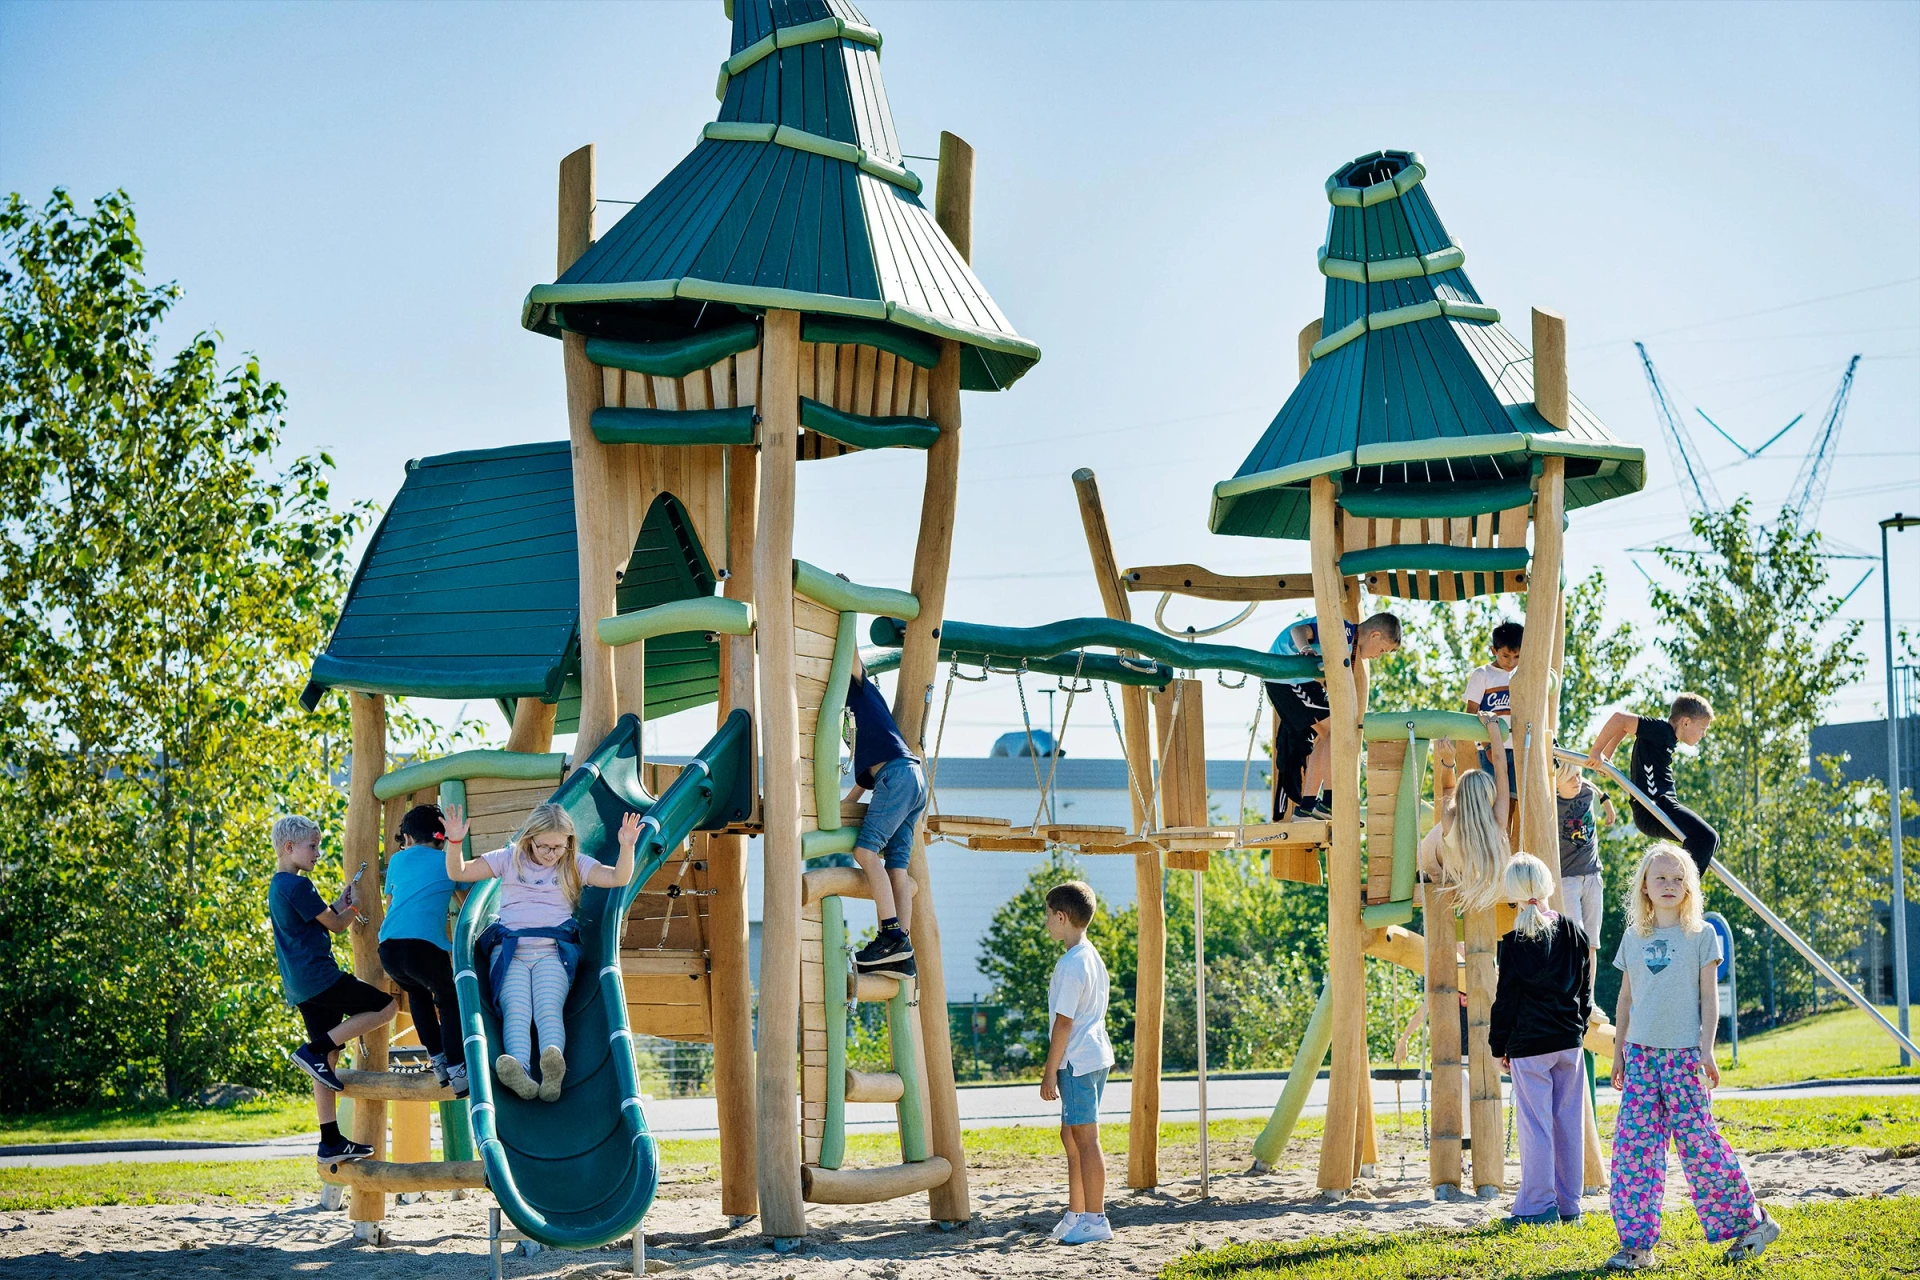 strutture di gioco in legno a tema fantasy con i bambini